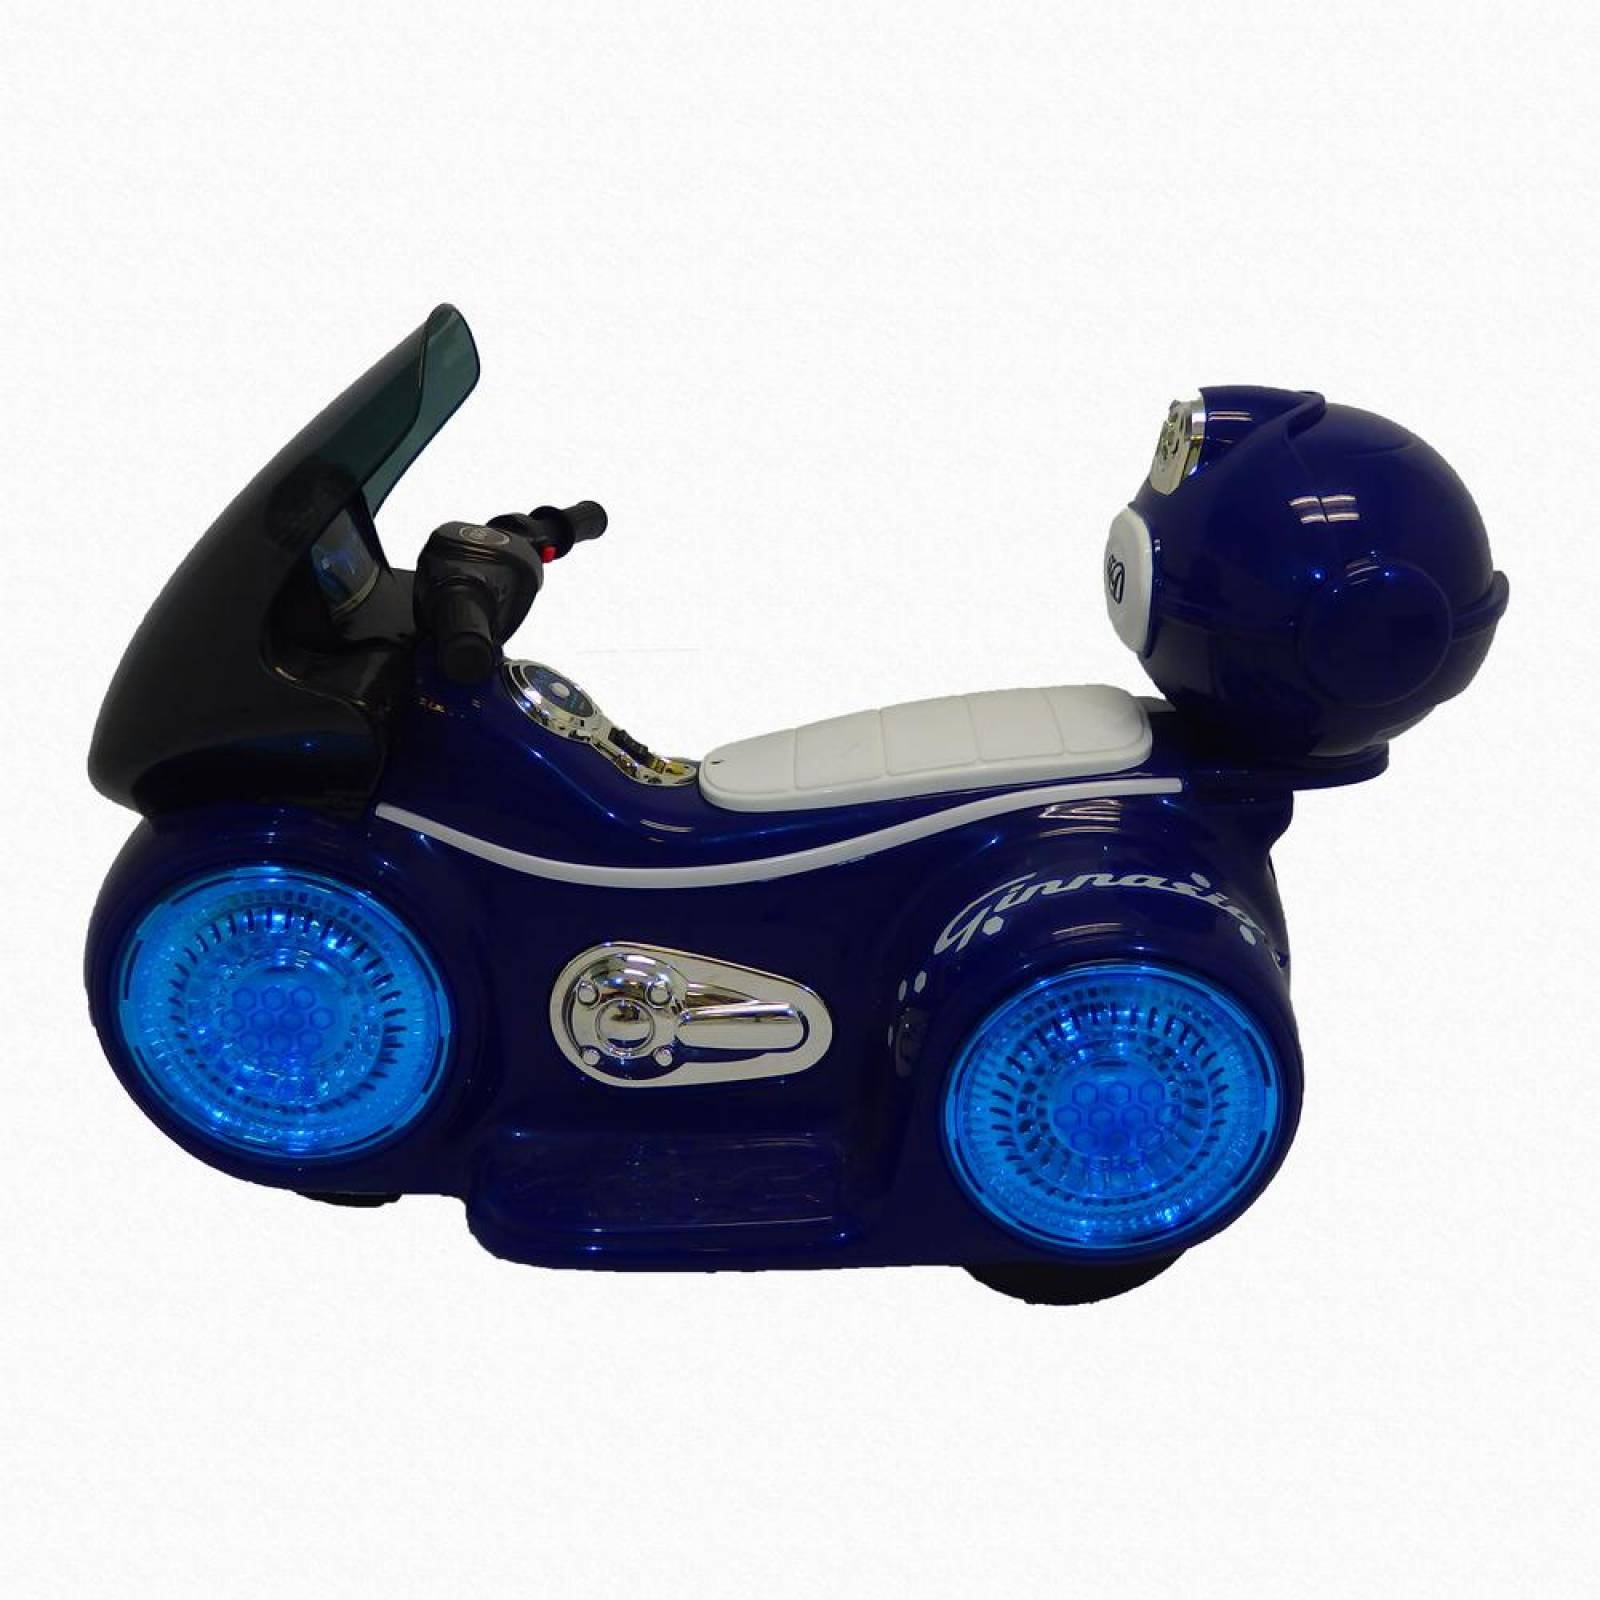 Motocicleta  deportiva eléctrica con sonido y led para niños  - Azul